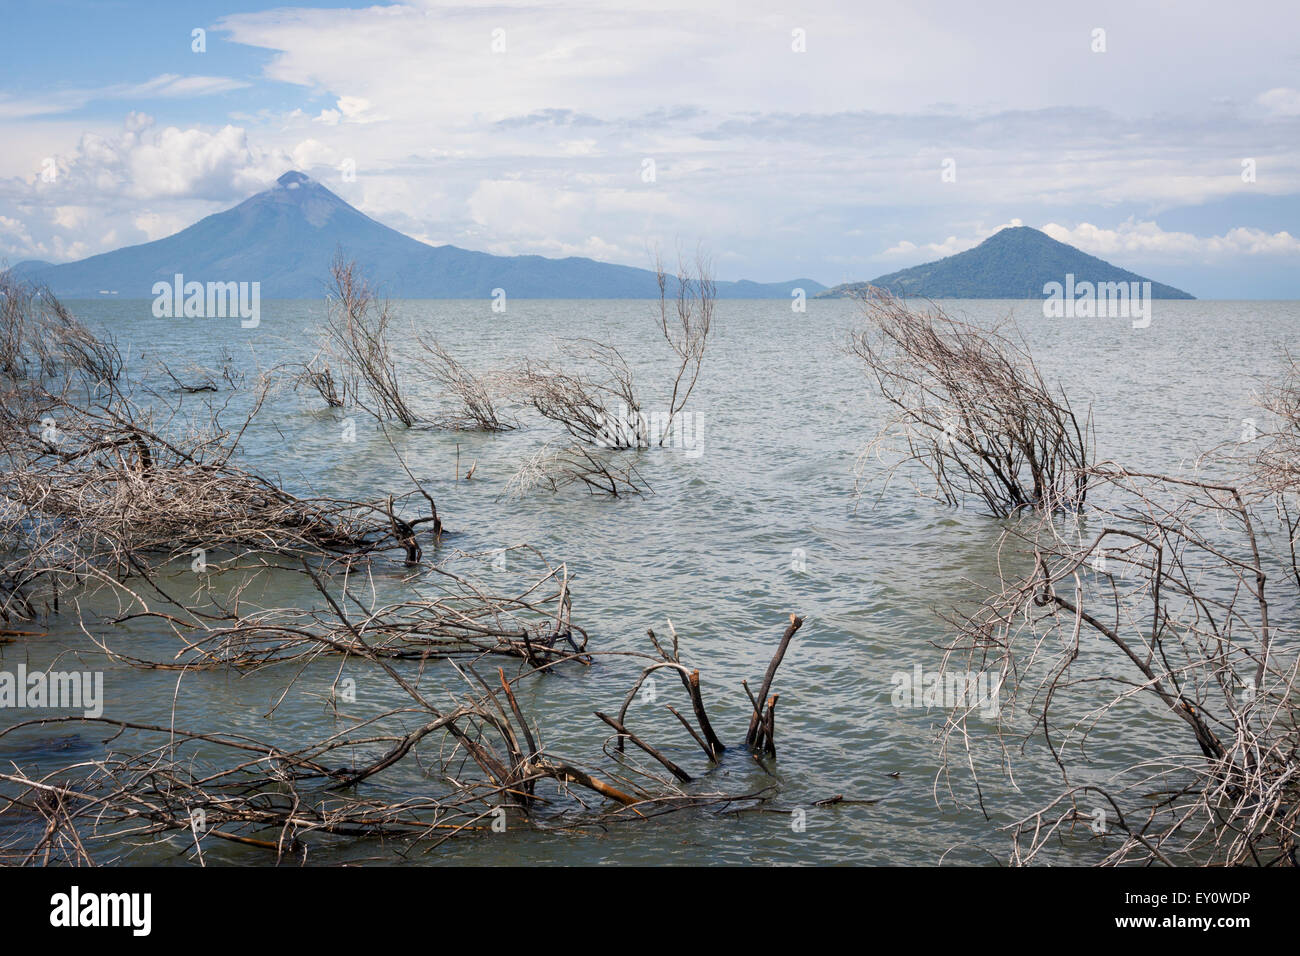 Momotombo and Momotombito volcanoes from Lake Managua, Nicaragua Stock Photo